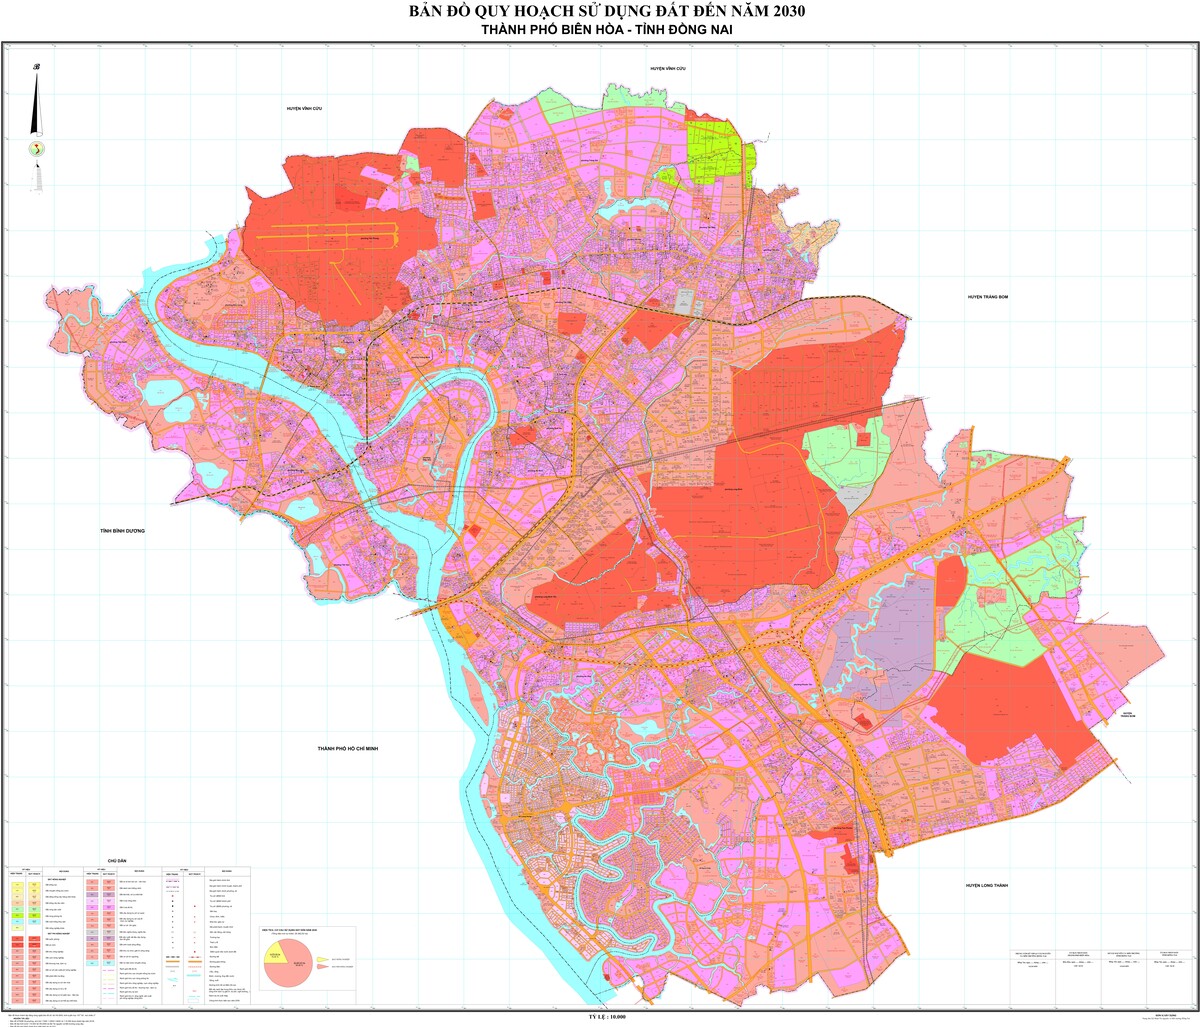 Bản đồ quy hoạch thành phố Biên Hòa, tỉnh Đồng Nai đến năm 2030